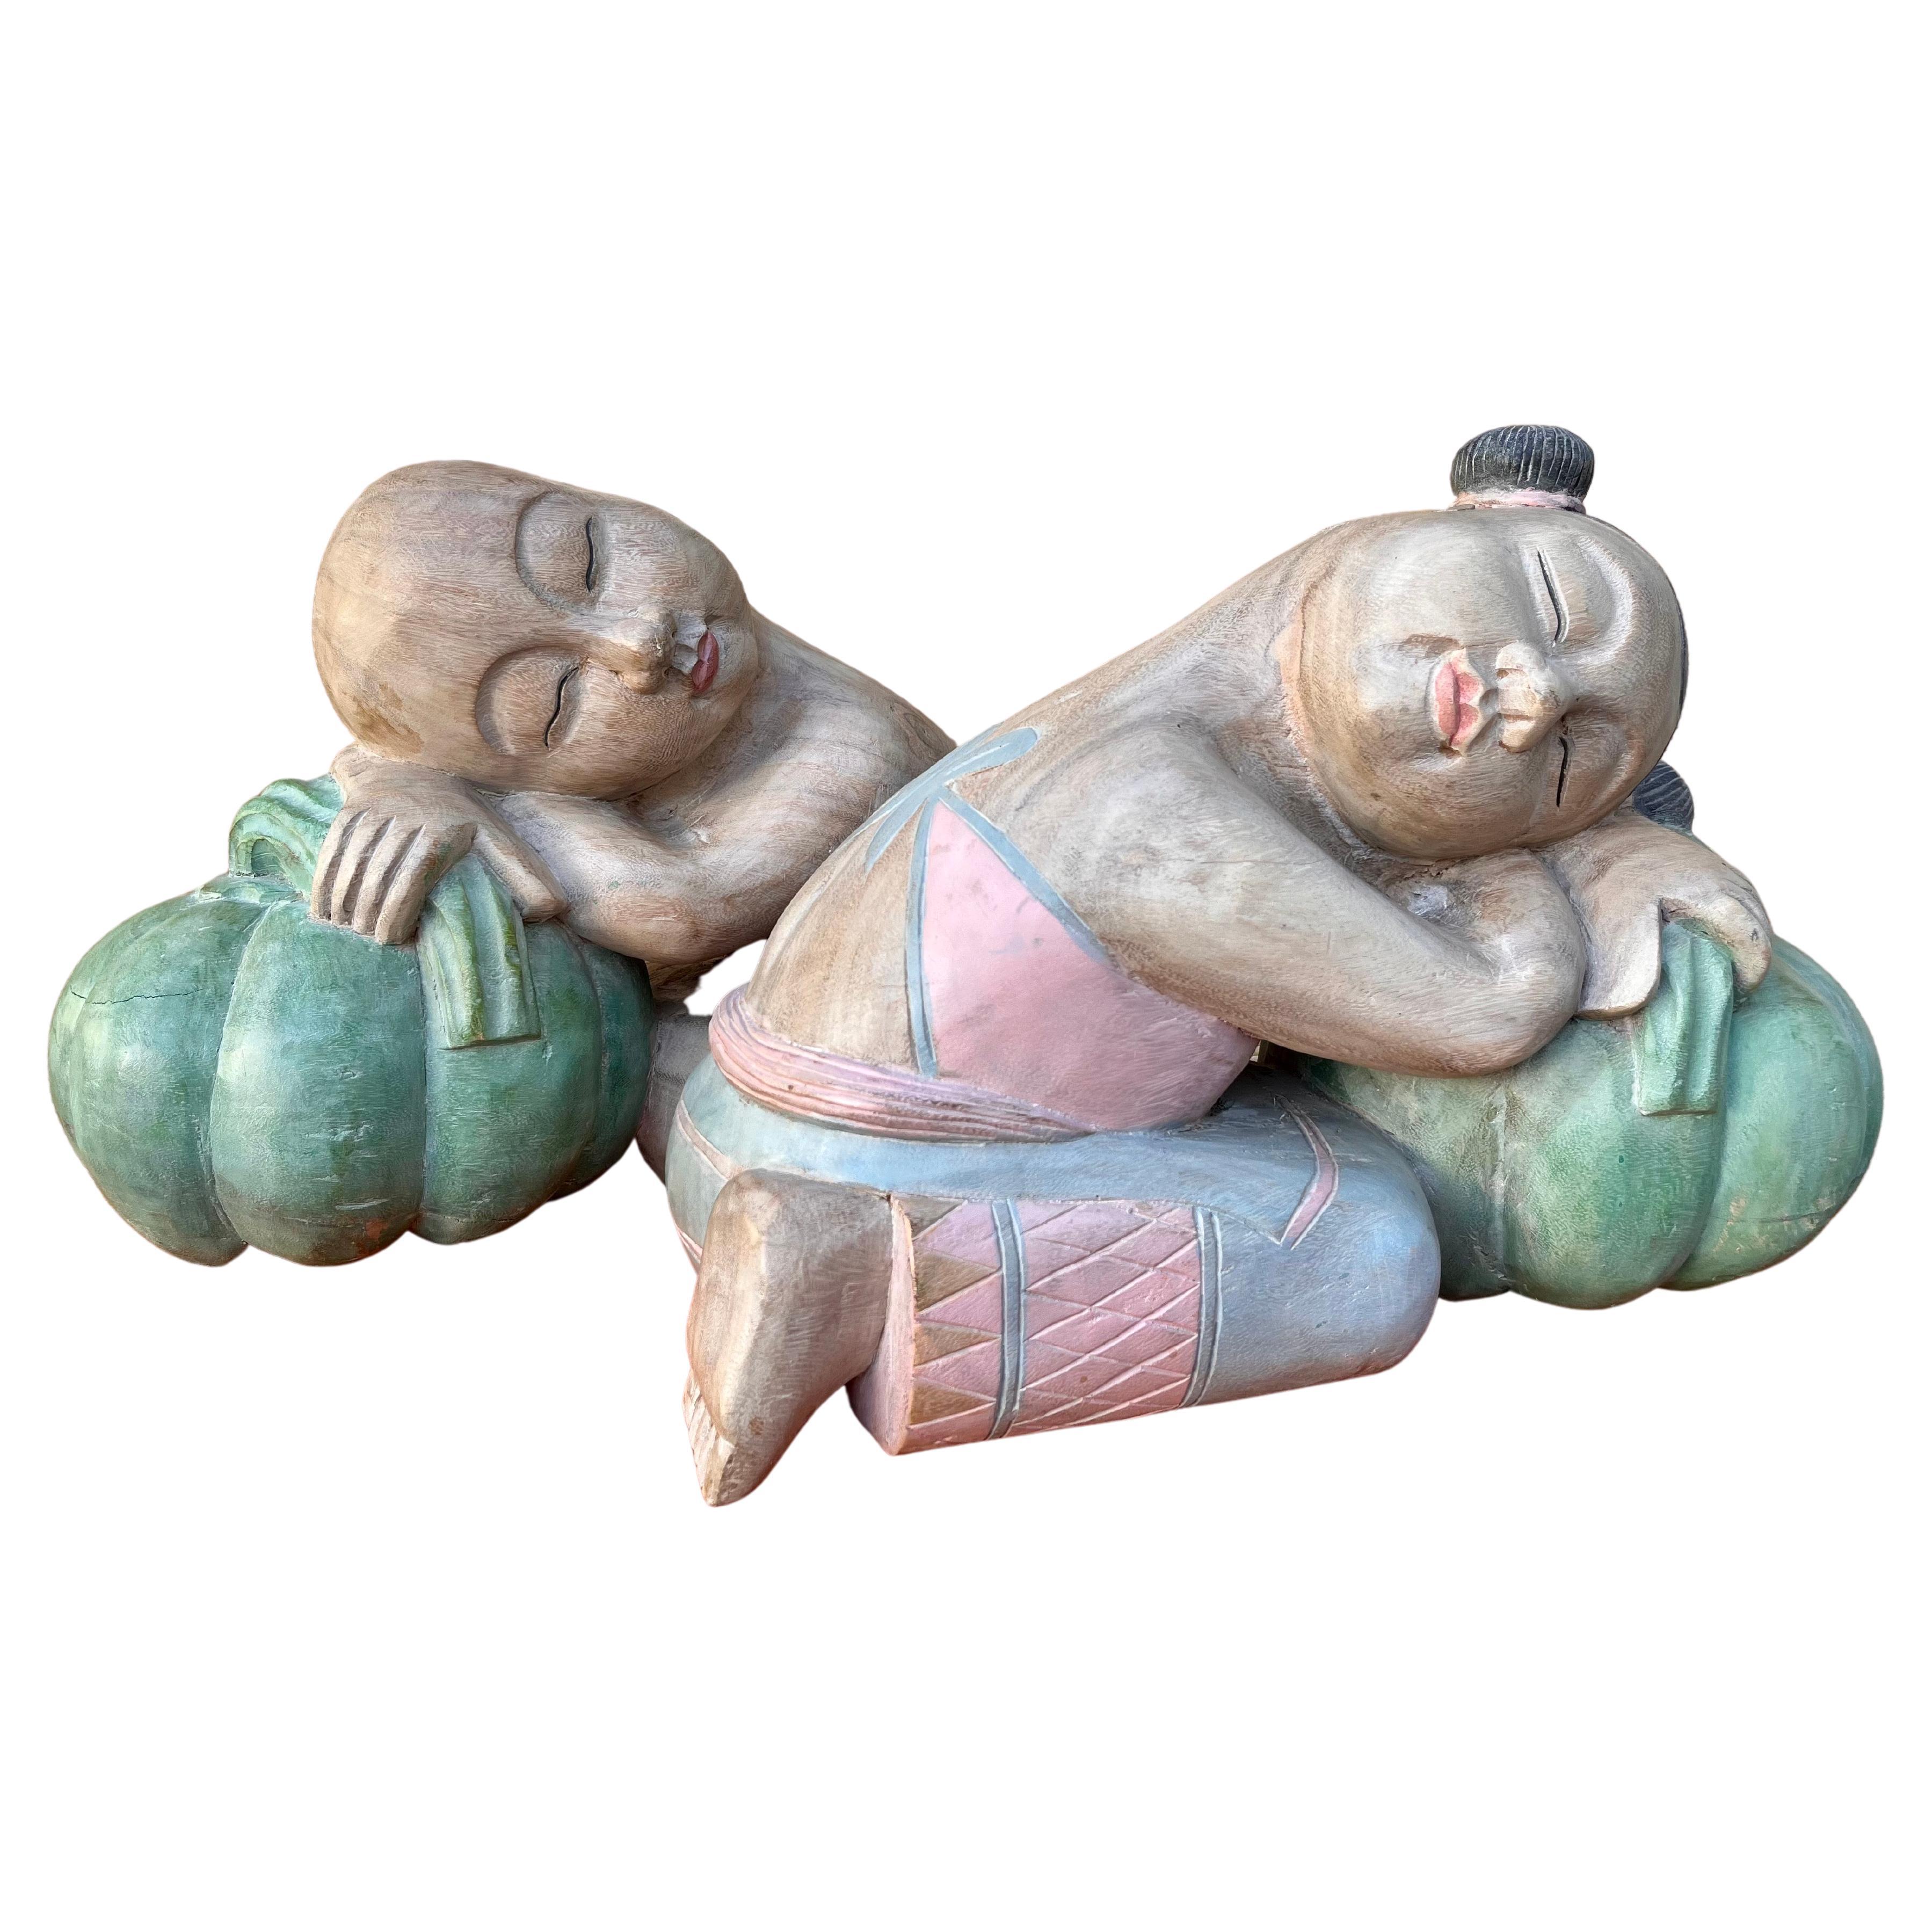 Grandes sculptures asiatiques en bois sculpté représentant des enfants de bonne chance endormis sur des melons